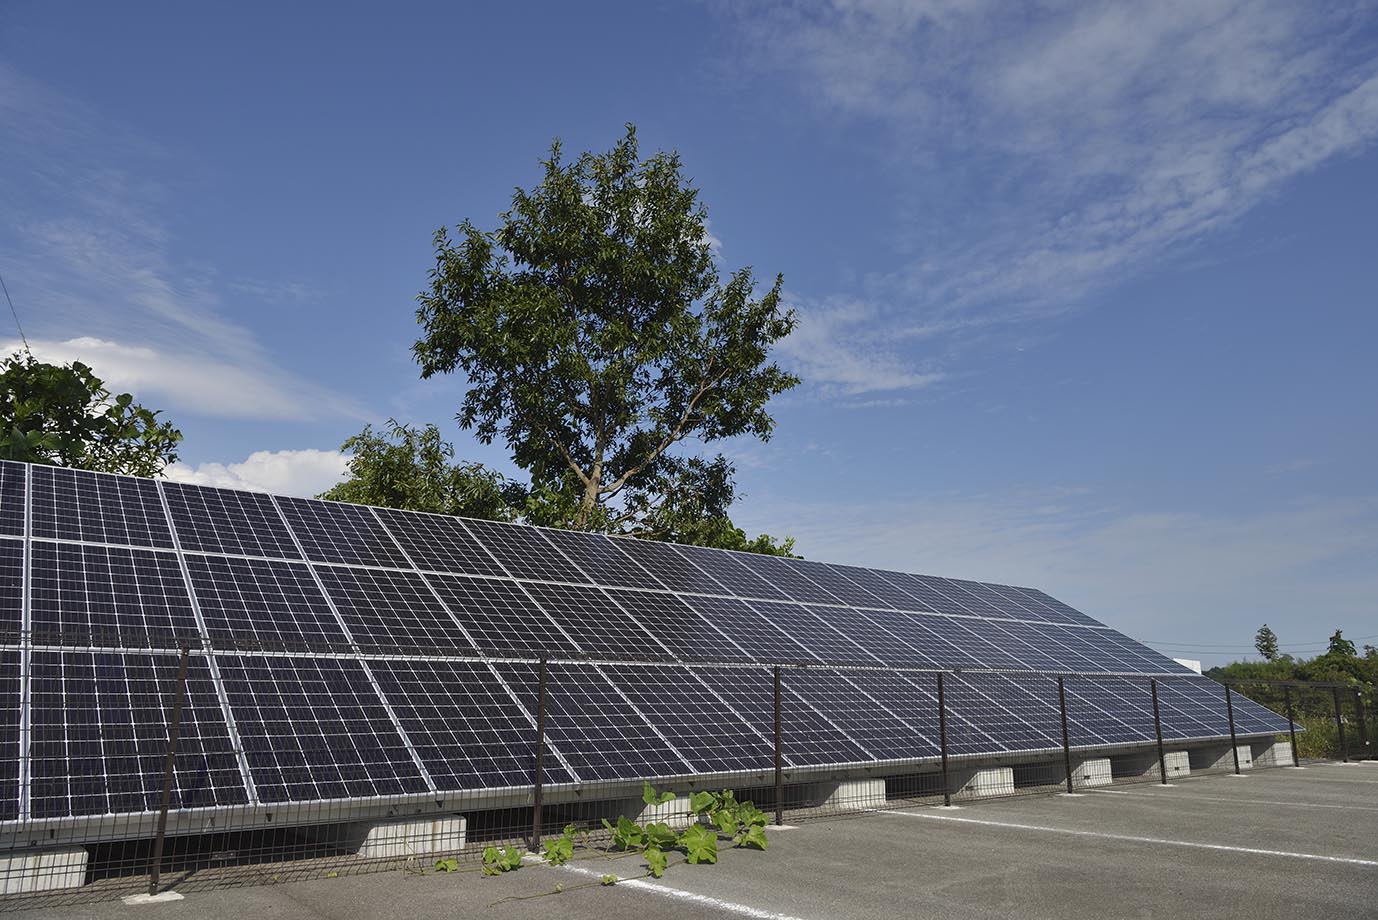 津営業所の駐車場脇に設置した太陽光発電設備。毎時300ワット発電のパネル（54枚設置）